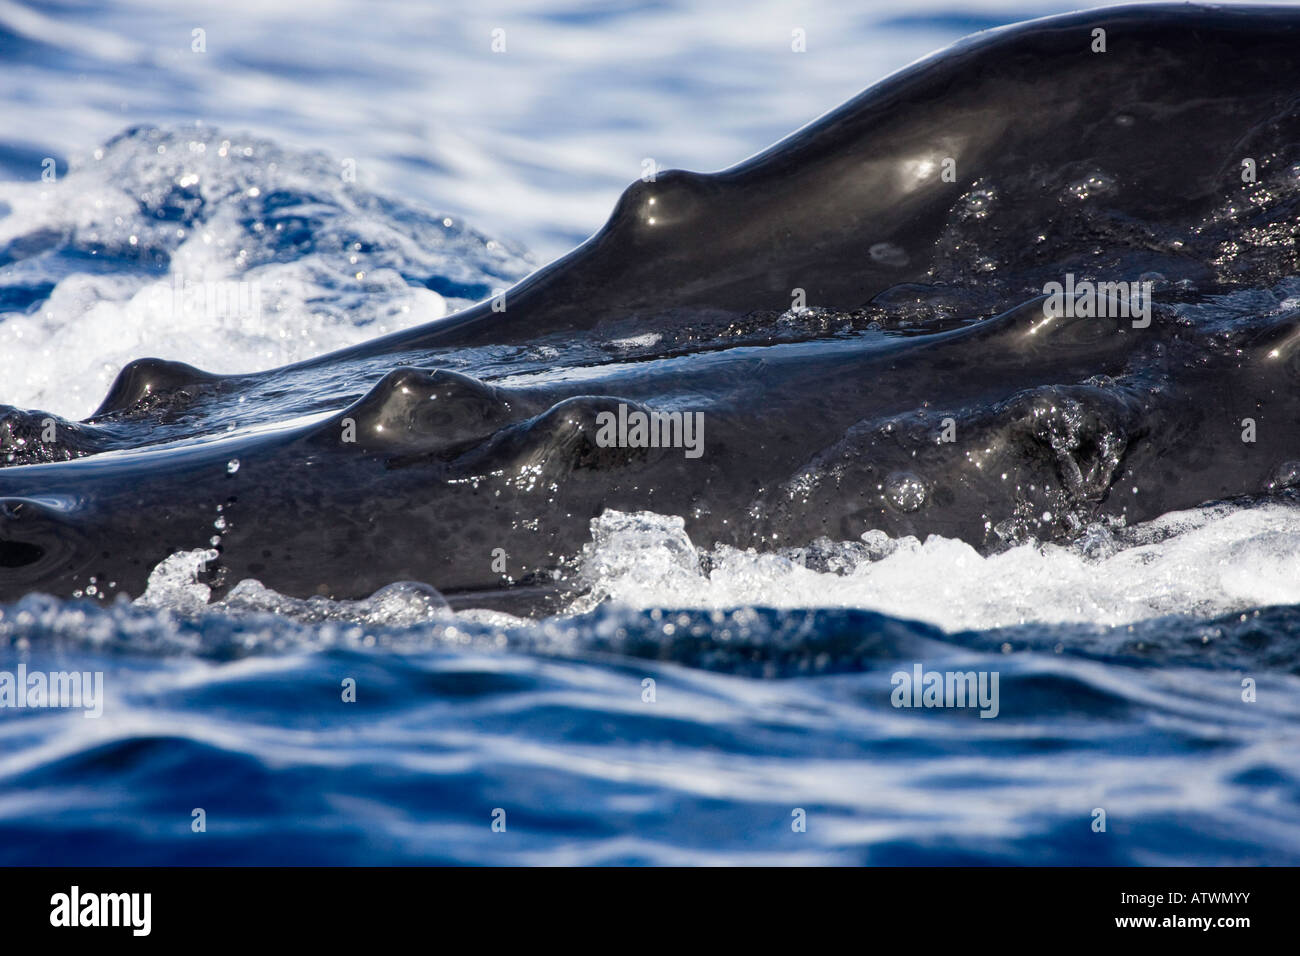 Einen genauen Blick auf die Beule wie Knöpfe, bekannt als Tuberkel, oben auf den Kopf eines Buckelwal Impressionen Novaeangliae. Stockfoto